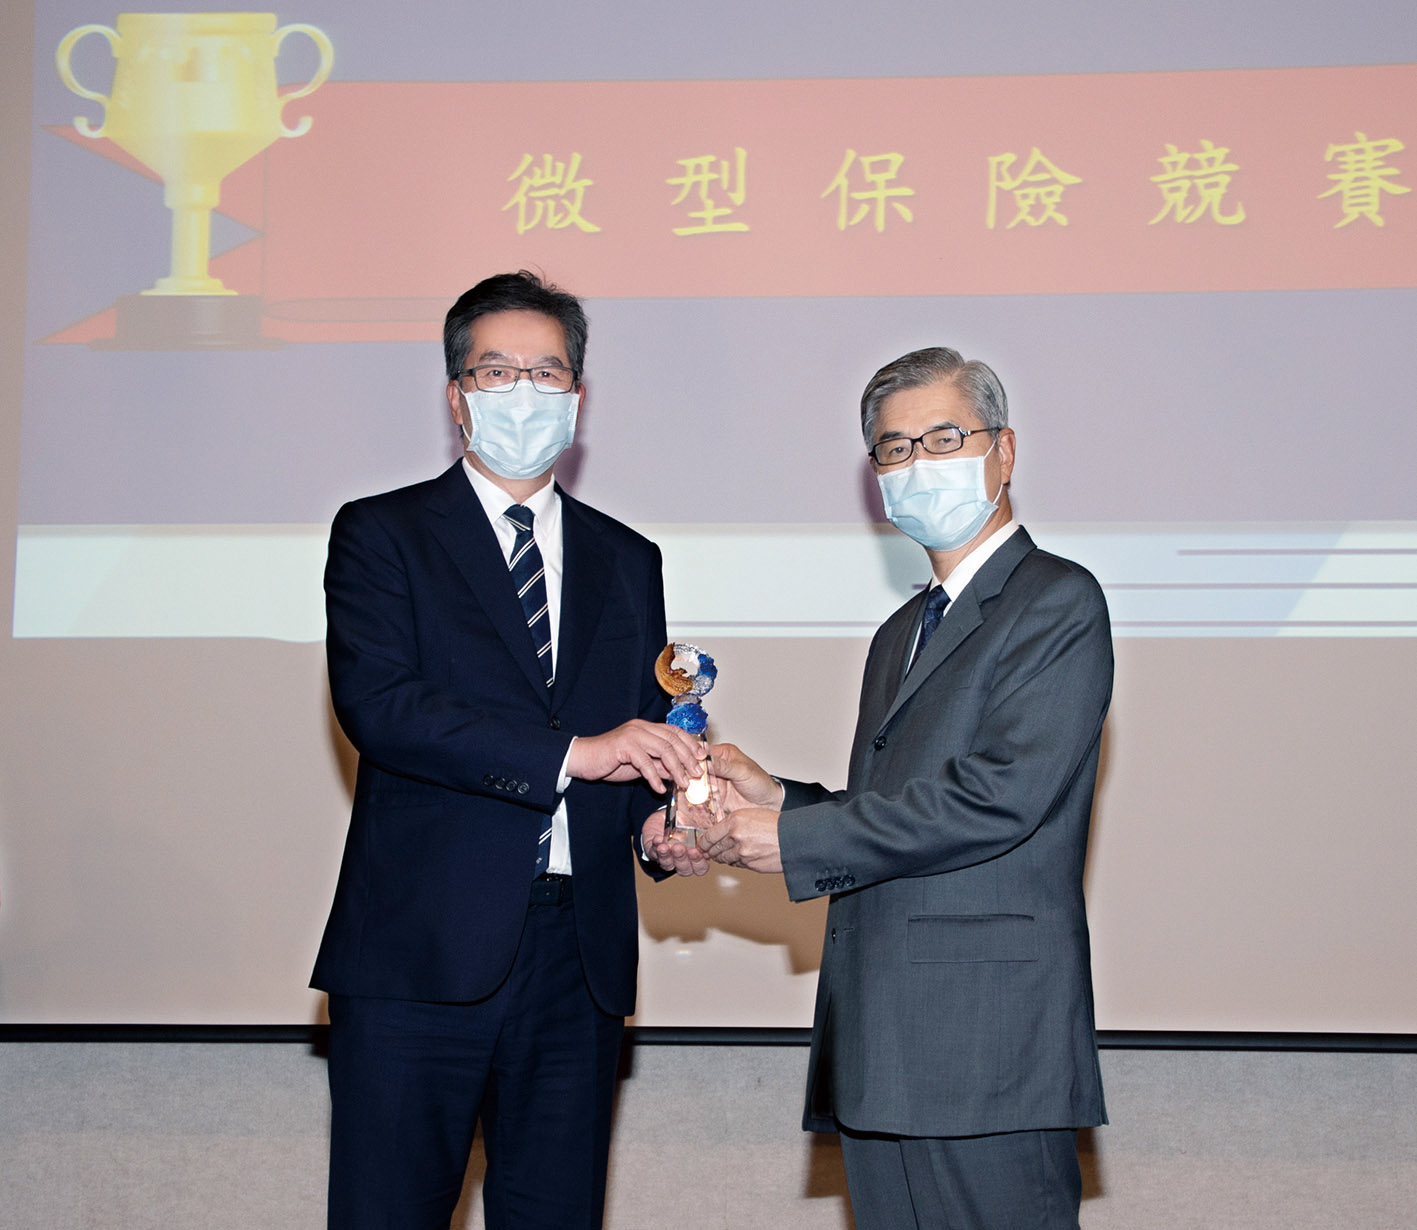 永達保經獲得2021年微型保險競賽-保險輔助人組第一名，由金融監督管理委員會主委黃天牧（右）頒獎，永達陳慶鴻總經理（左）代表受獎。